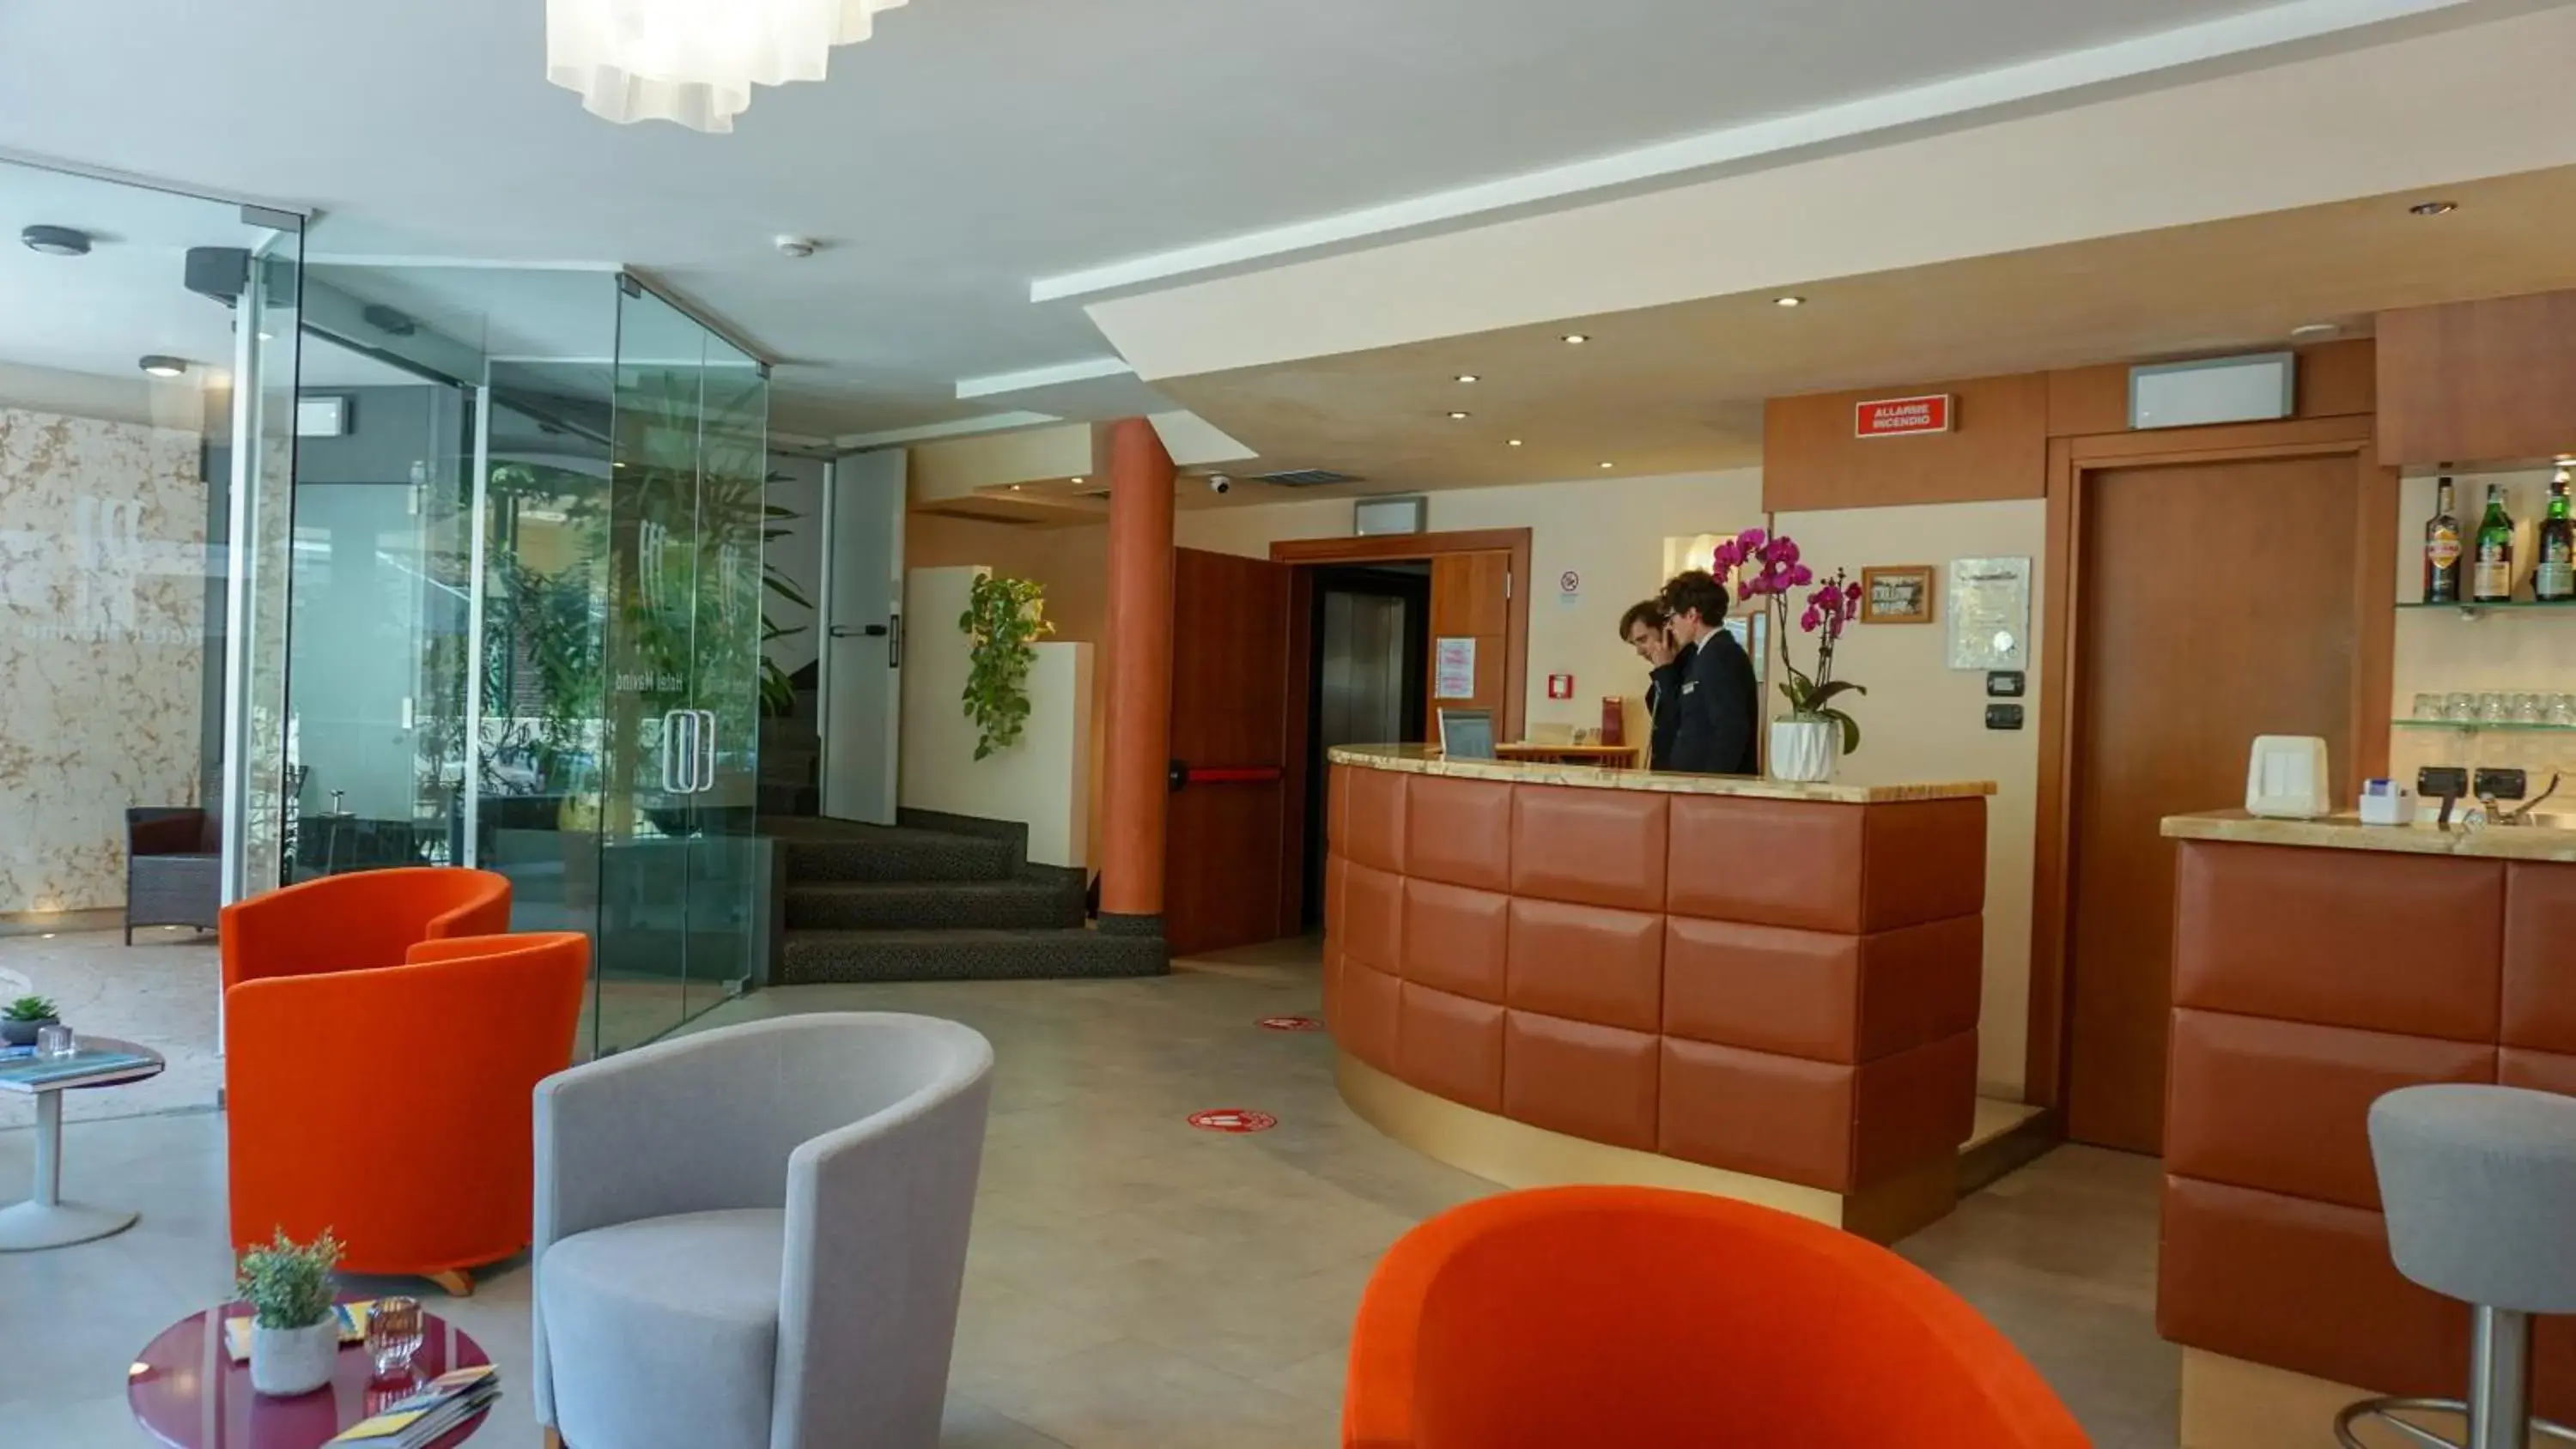 Lobby or reception, Lobby/Reception in Hotel Mavino